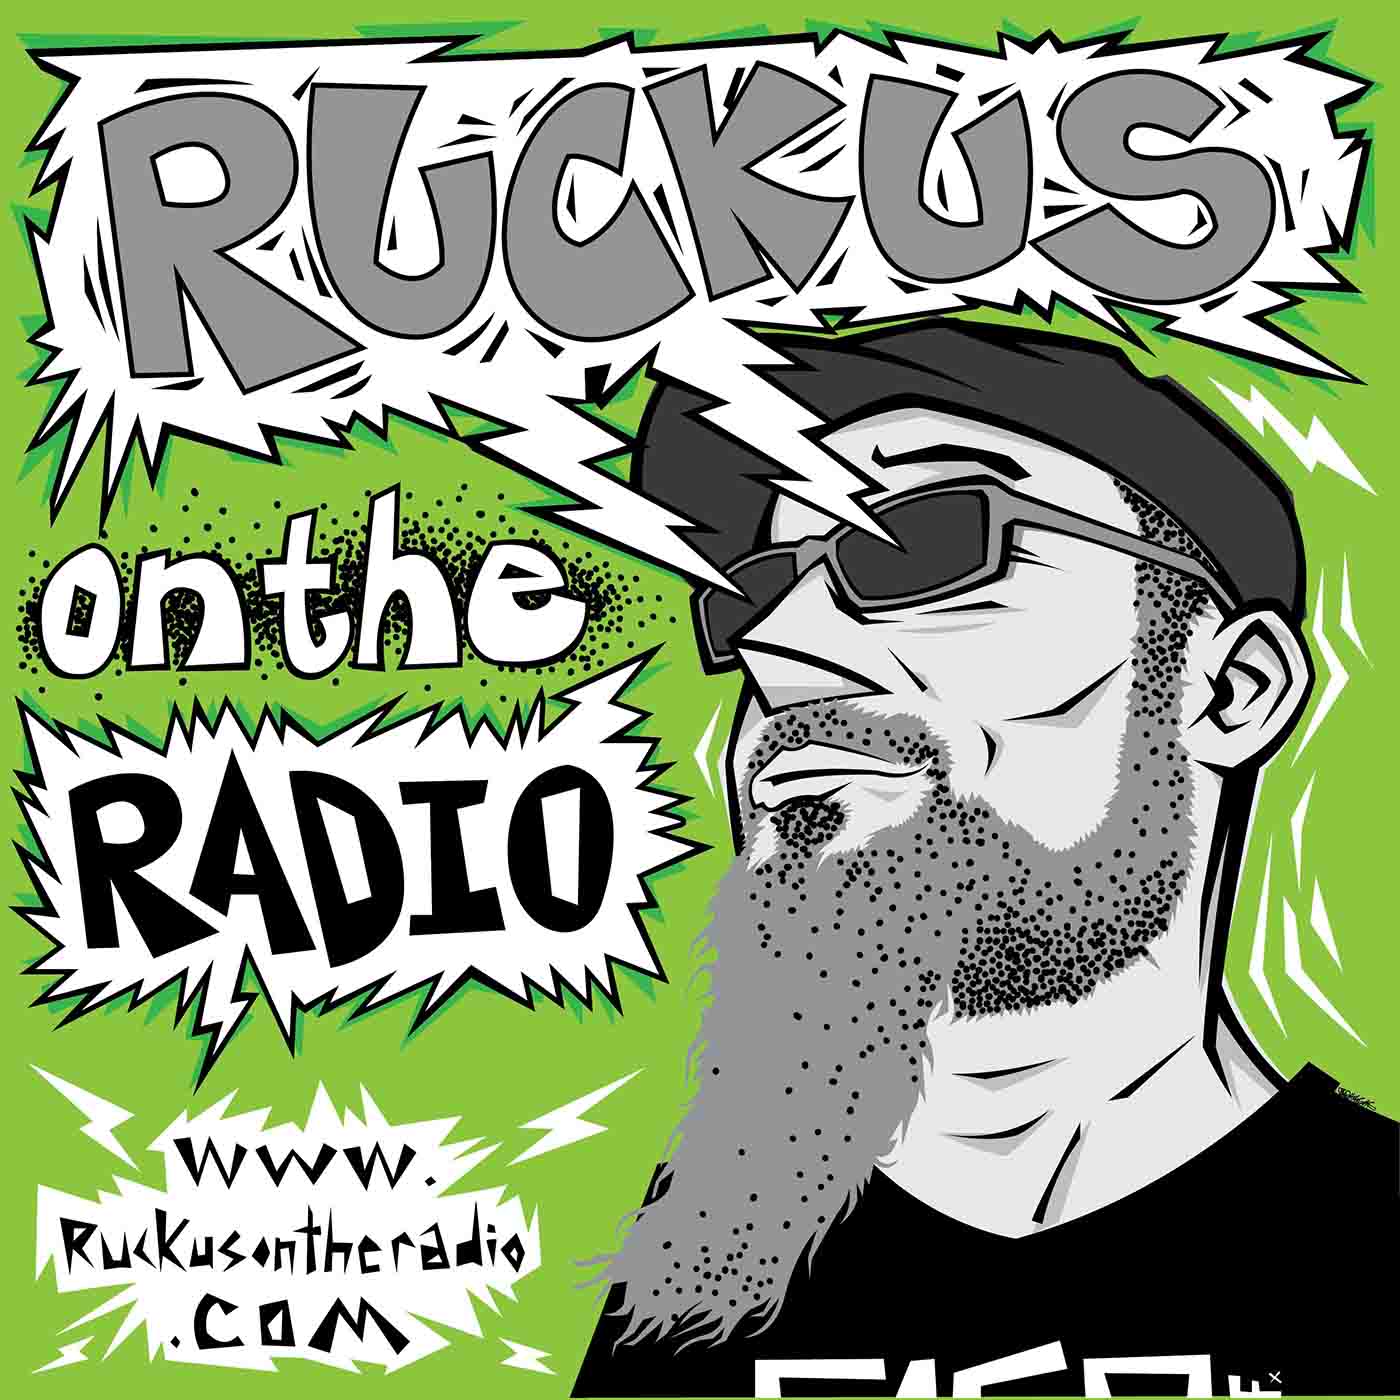 RUCKUS On The RADIO